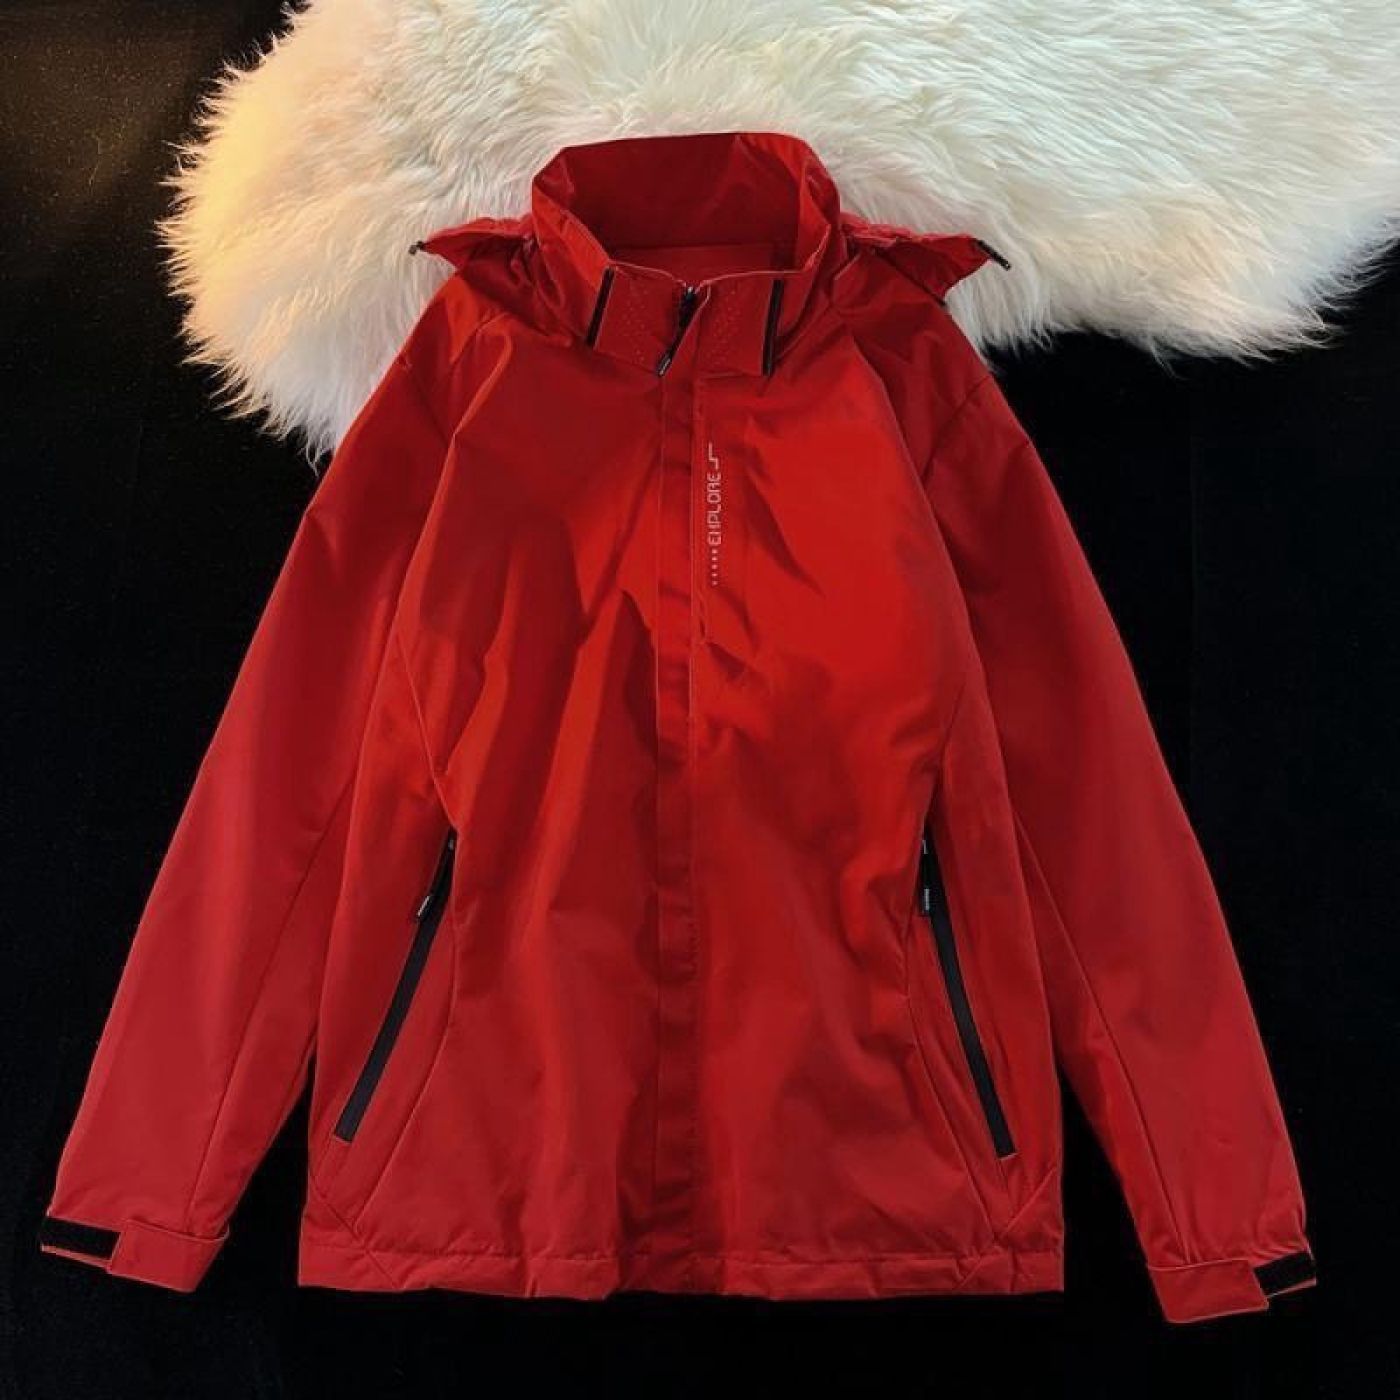 Áo khoác gió 2 lớp thời trang Nam Nữ - Màu Đỏ